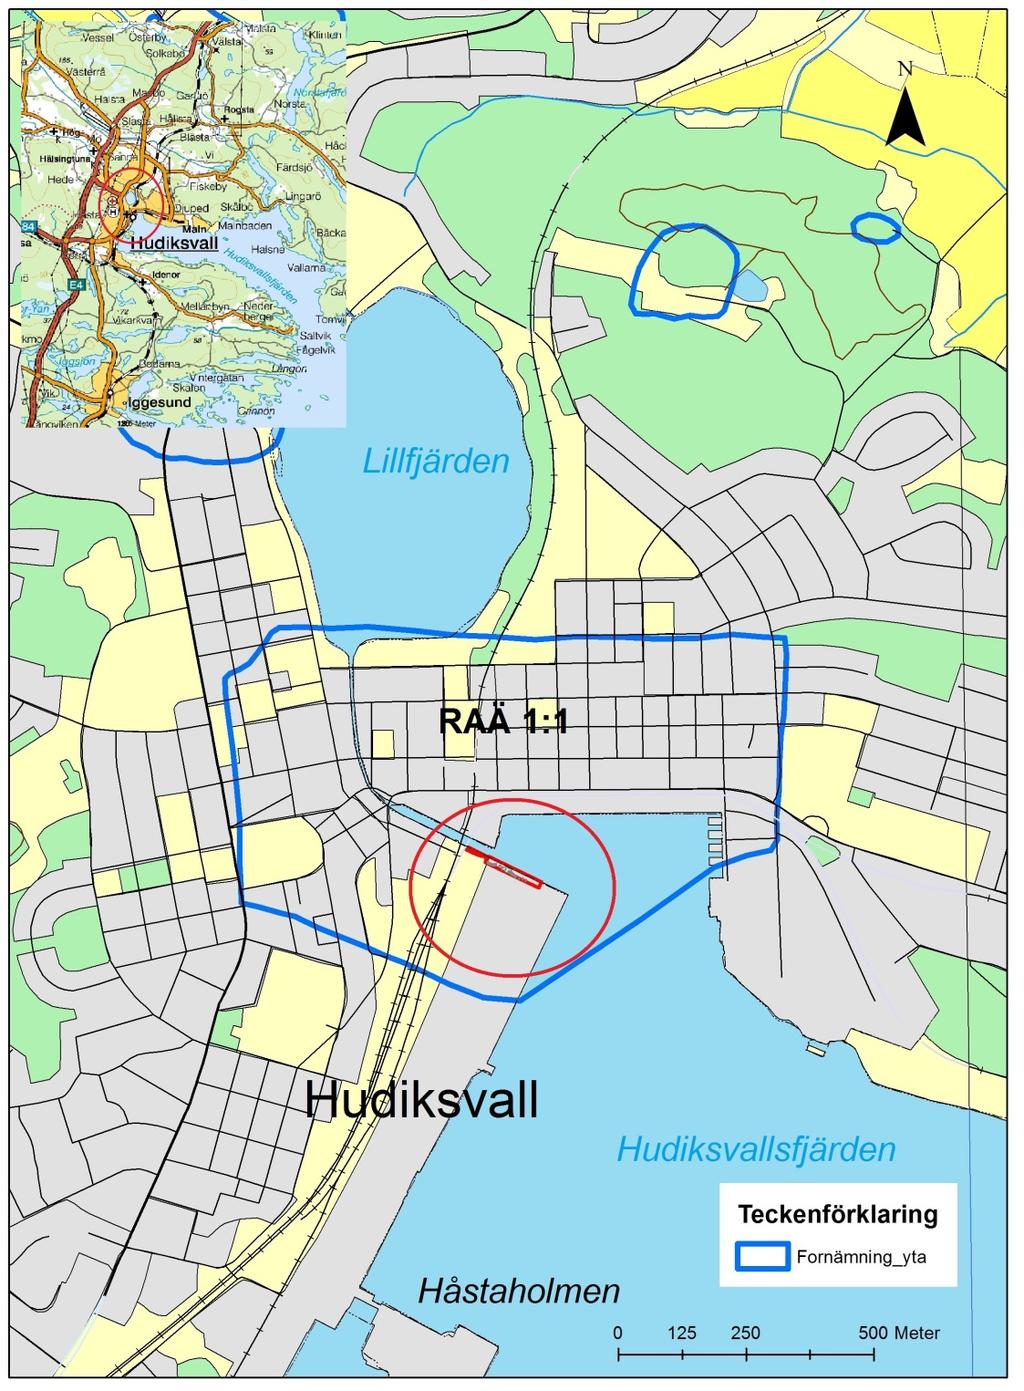 Figur 1. Karta över centrala Hudiskavall med undersökningsområdet rödmarkerat.